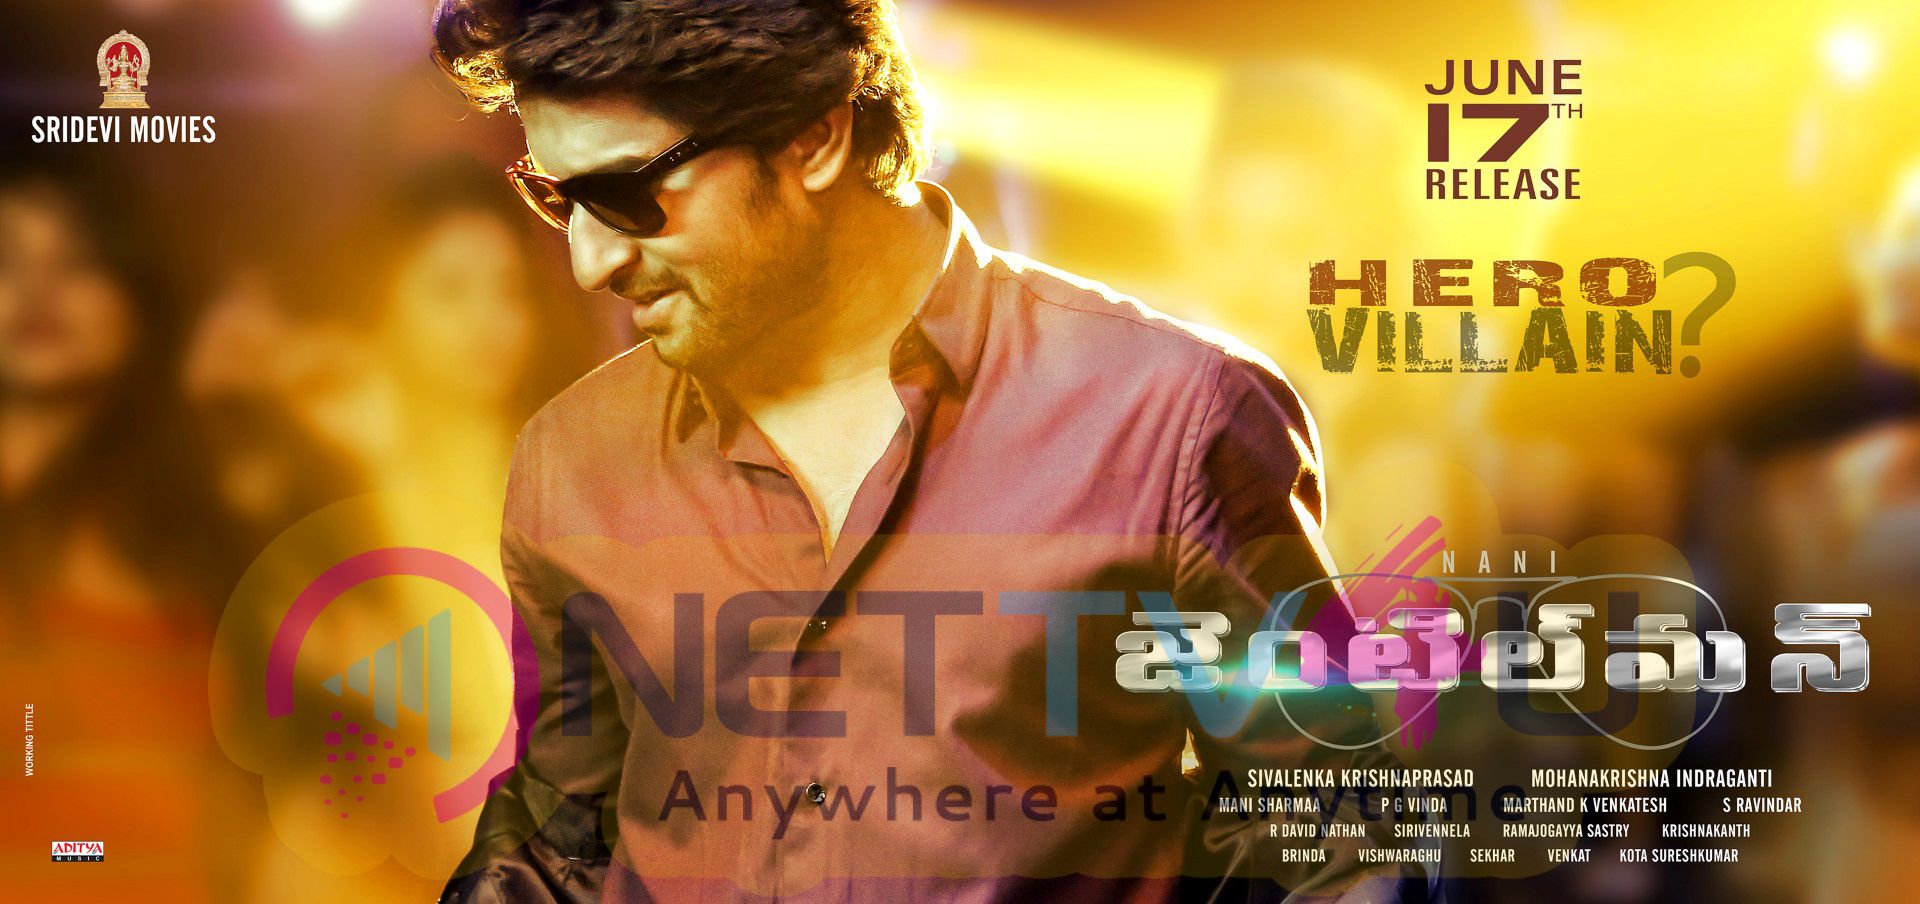 Nani In Gentleman Telugu Movie June 17th Release Wallpapers Telugu Gallery